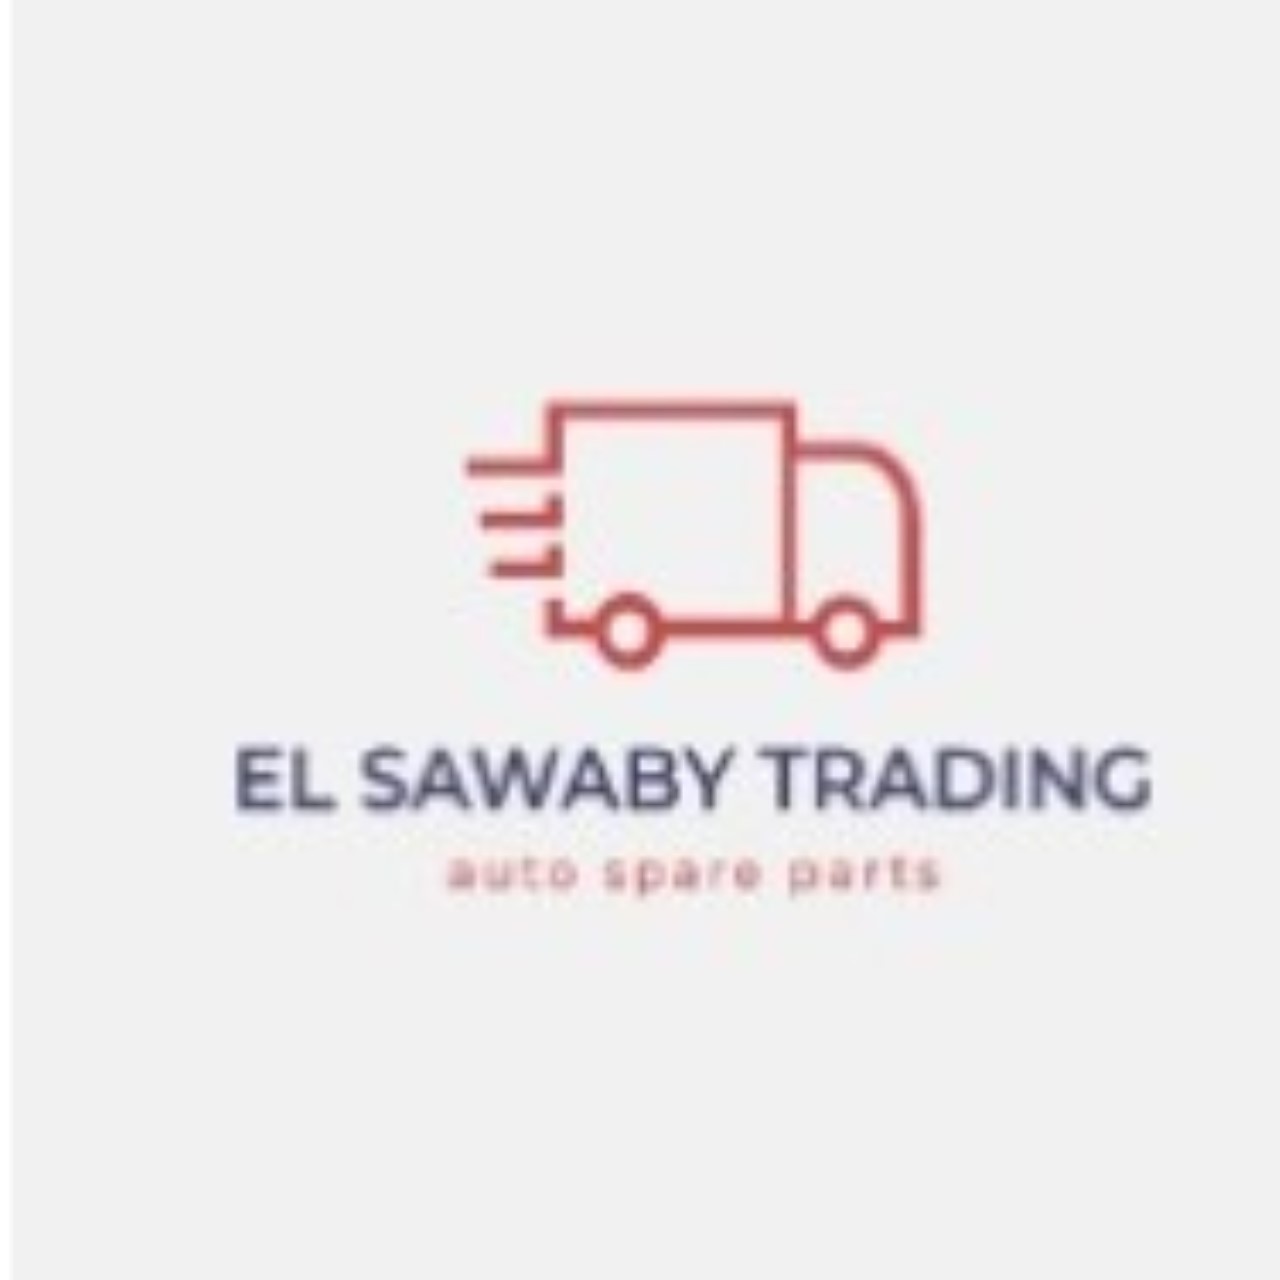 EL SAWABY TRADING